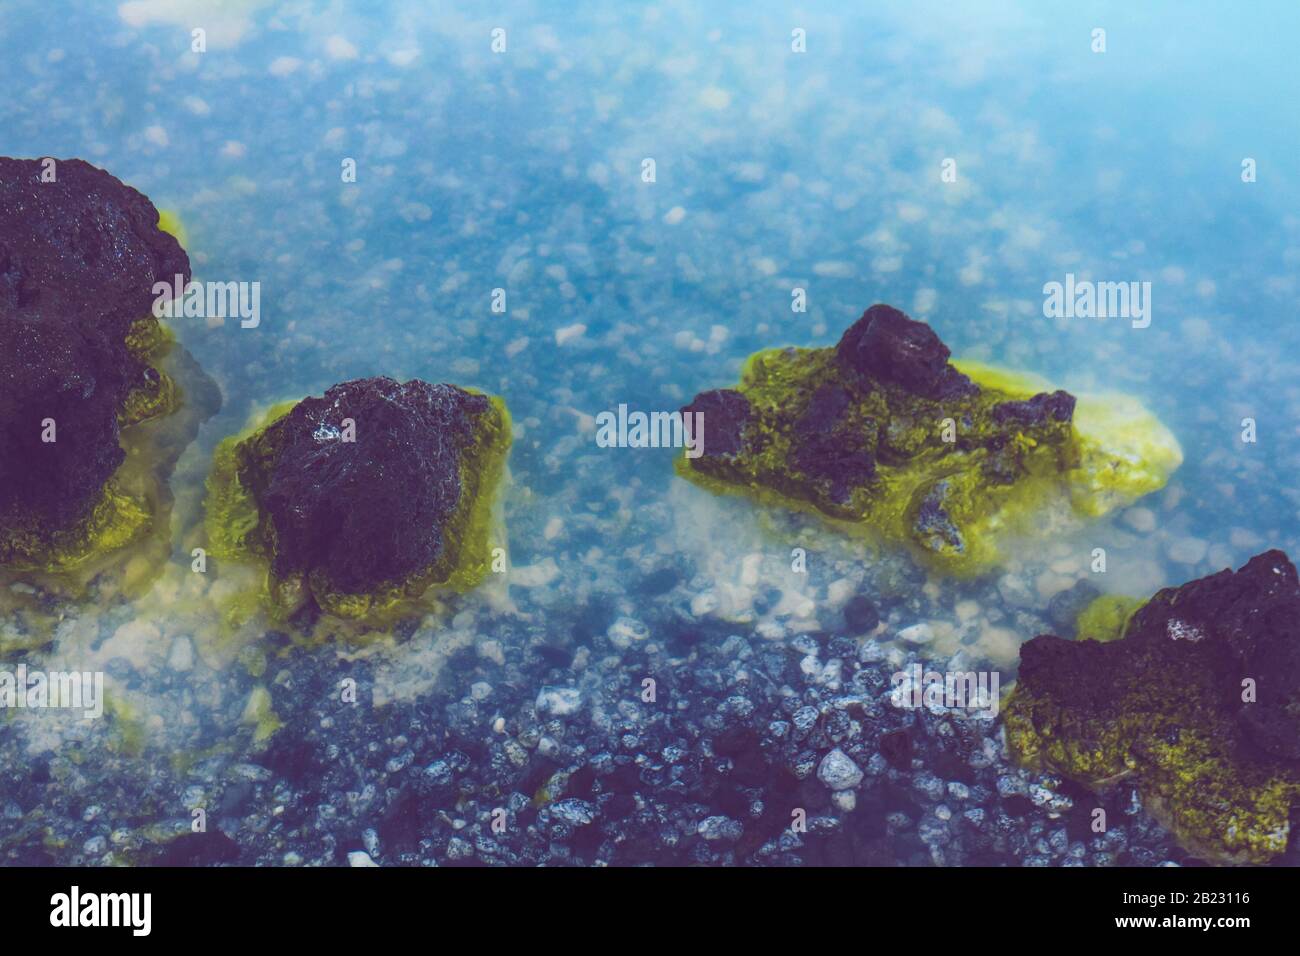 Detalle de las aguas lechosas y rocas con manchas de azufre de la laguna azul de Islandia, un manantial caliente con sílice utilizado para tratamientos de spa. Foto de stock